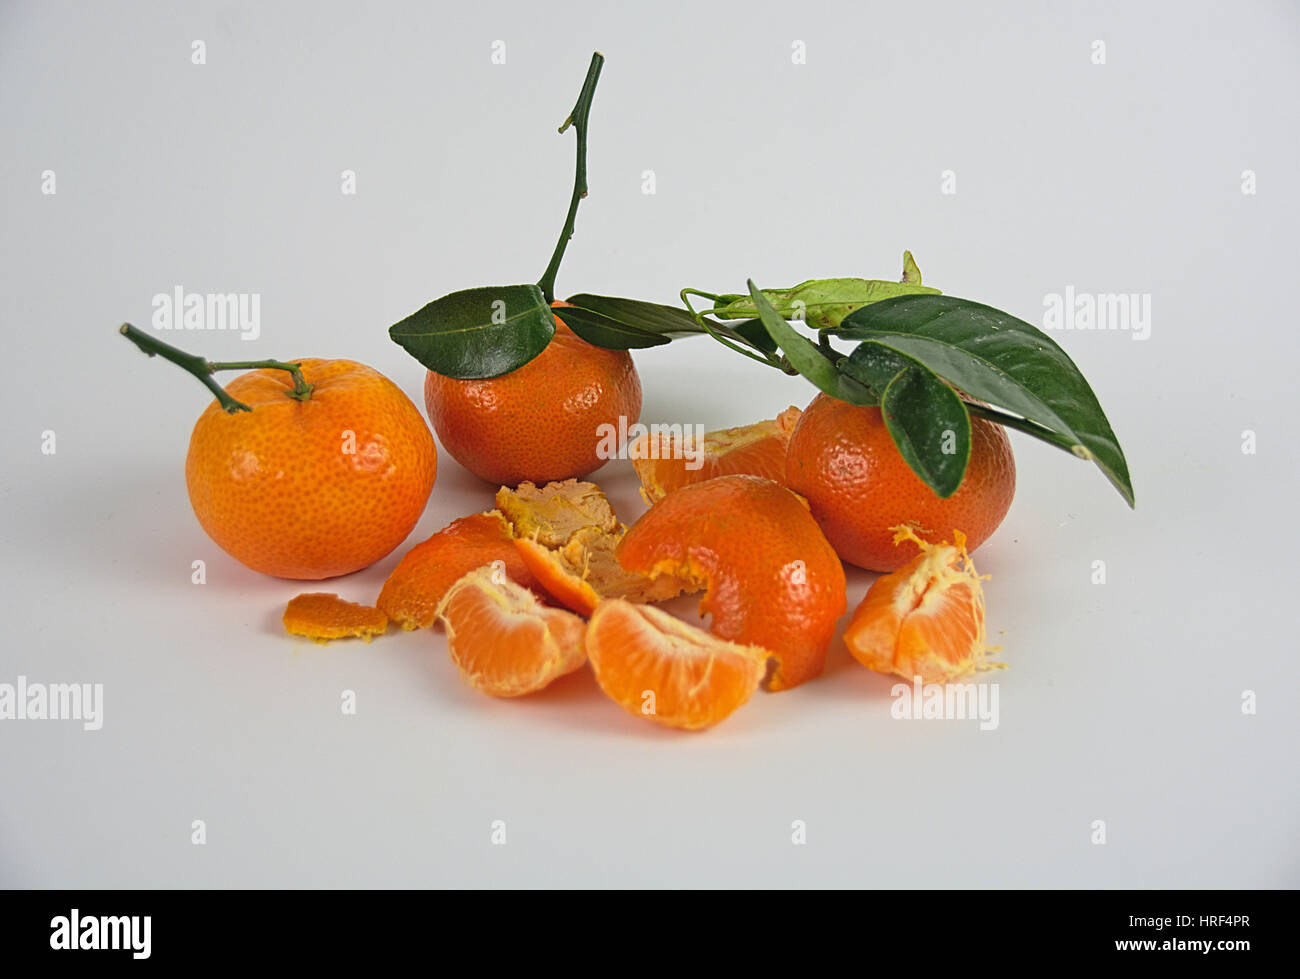 Tangerines Stock Photo